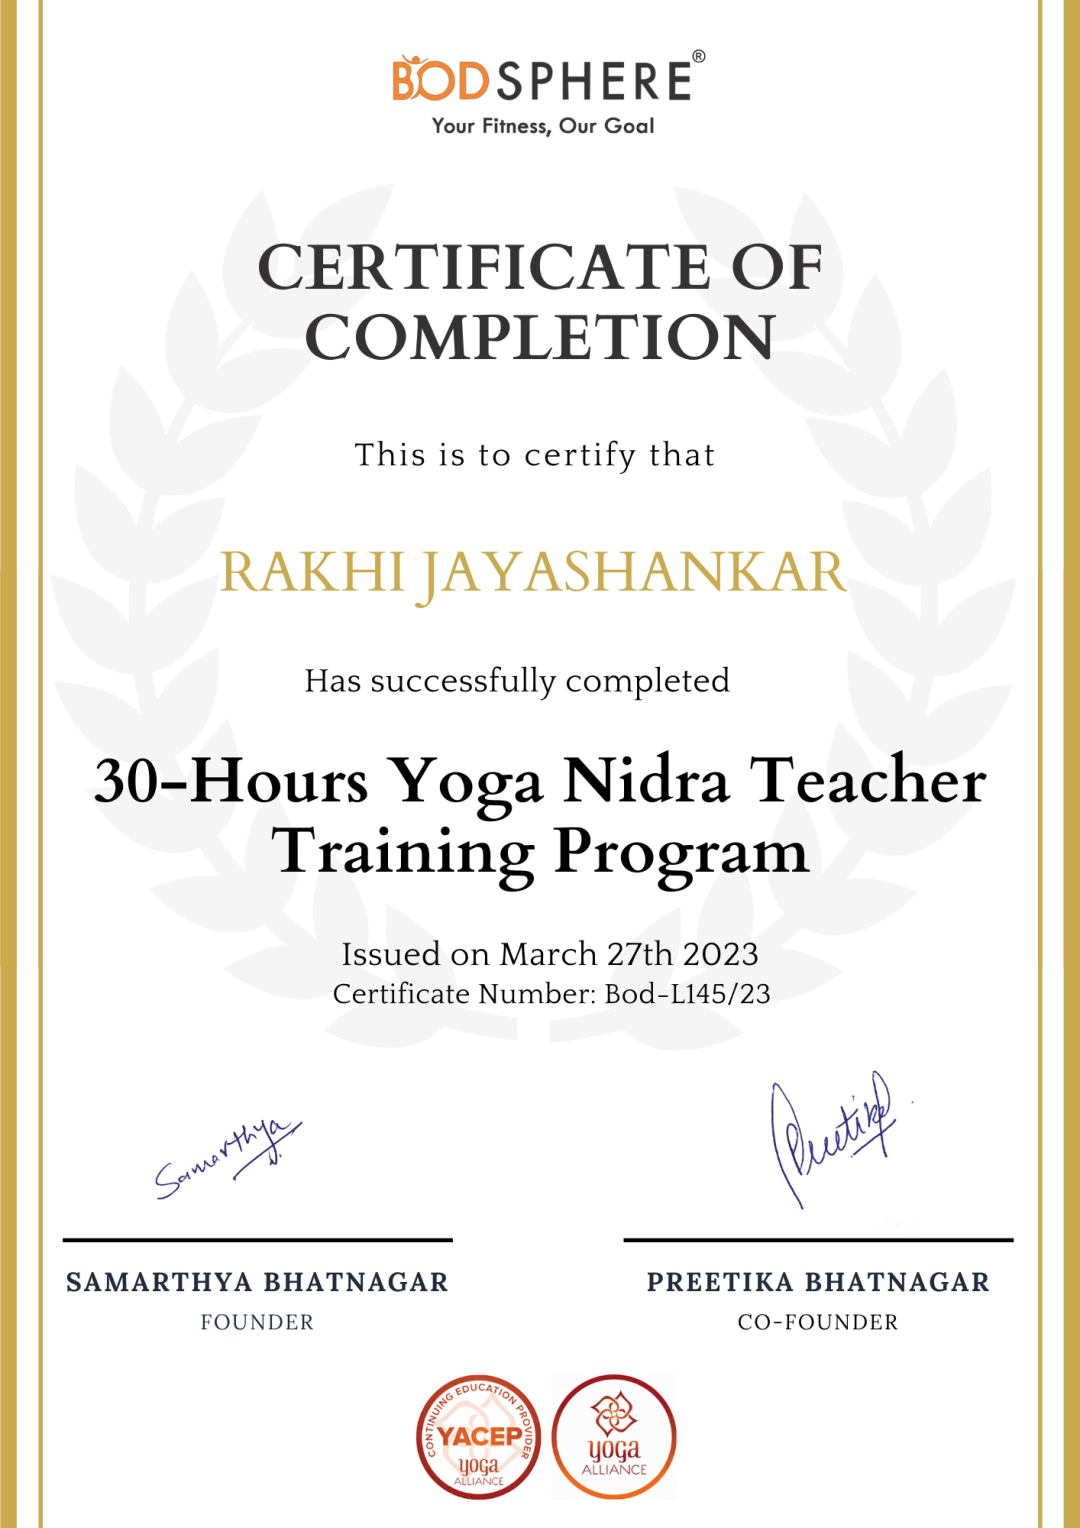 Yoga nidra teacher